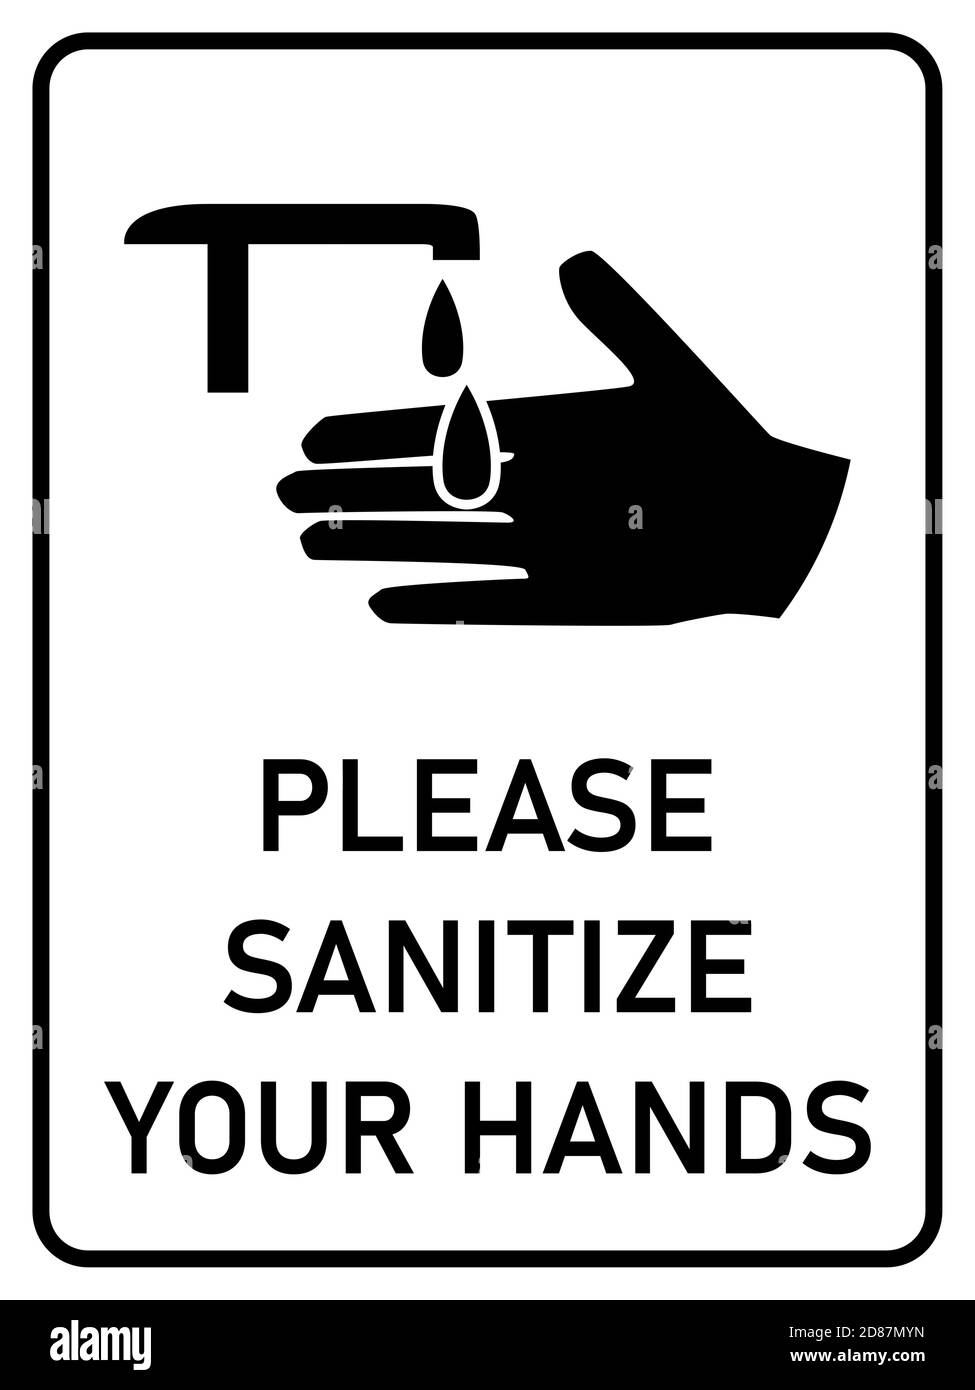 Por favor, desinfecte sus manos vertical Higiene Cartel de advertencia signo con una relación de aspecto de 3:4. Imagen vectorial. Ilustración del Vector